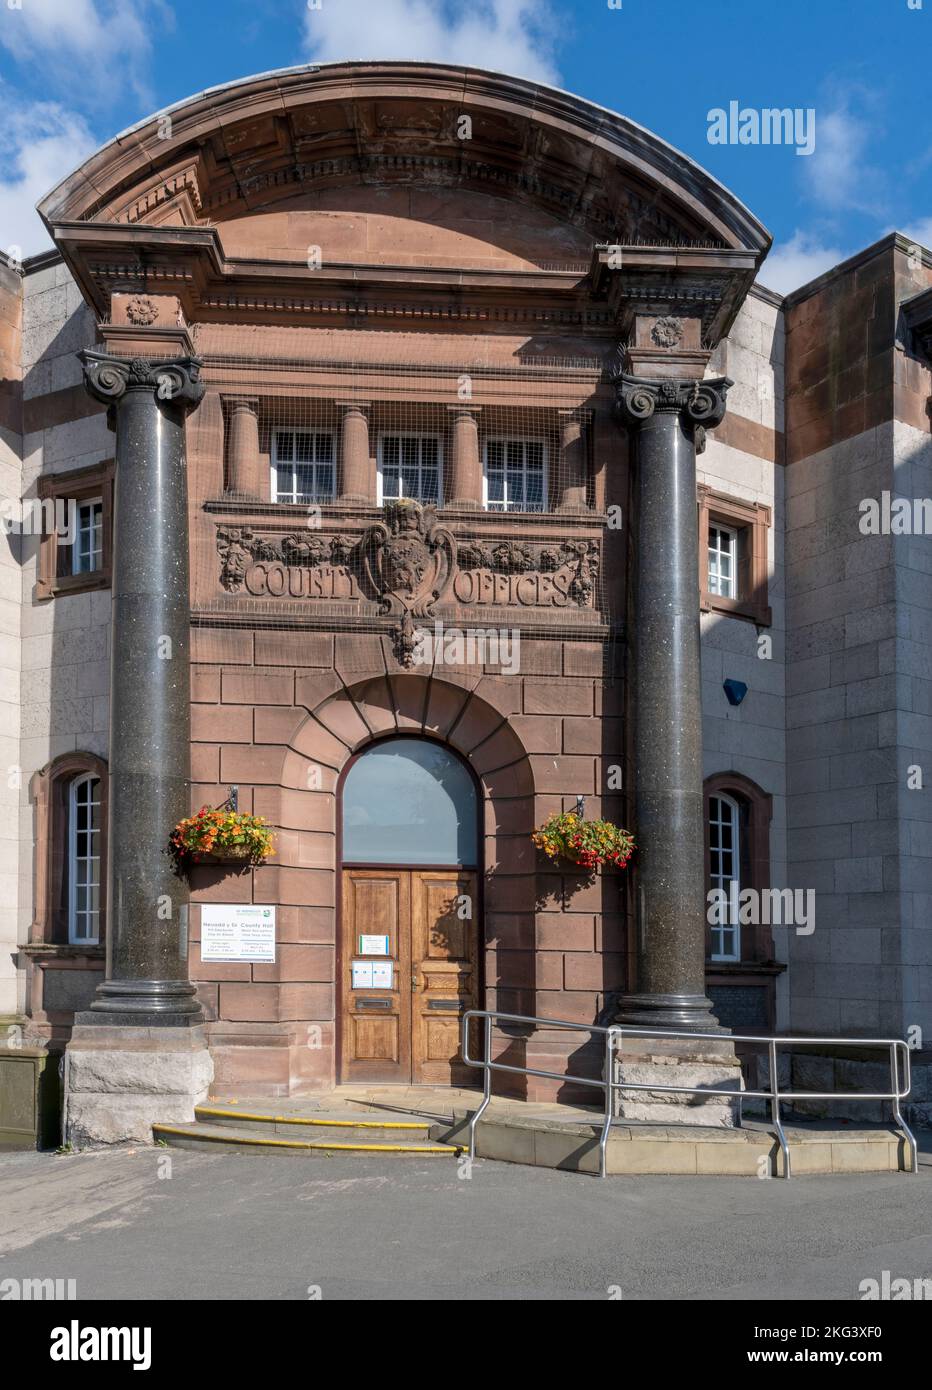 Bureaux du conseil du comté de Denbighshire - County Hall - Station Road, Ruthin, Denbighshire, pays de Galles, Royaume-Uni - vue sur l'entrée principale Banque D'Images